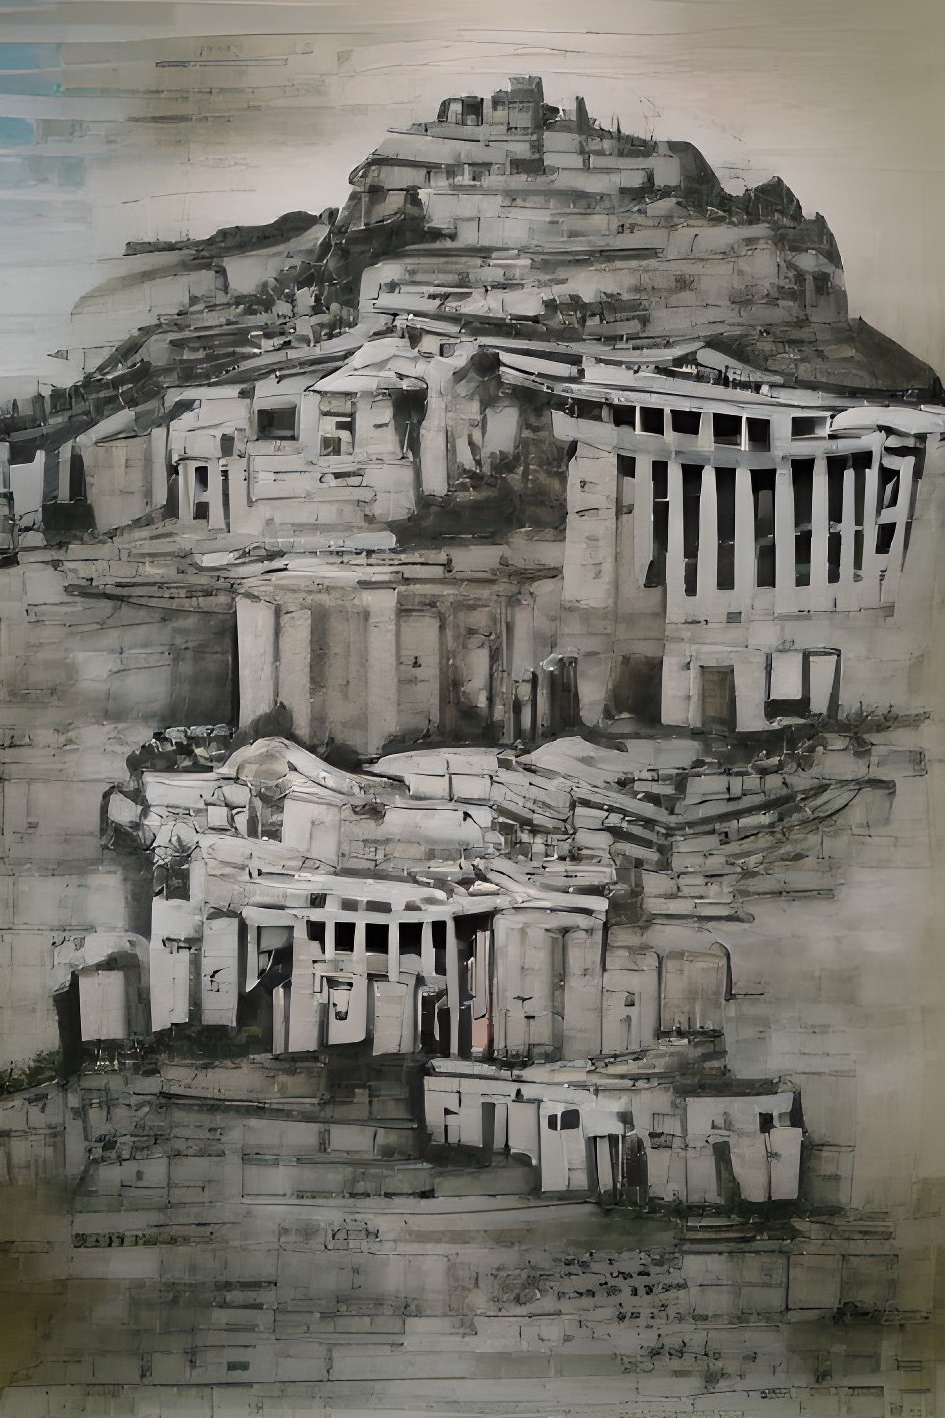 acropolis citadel